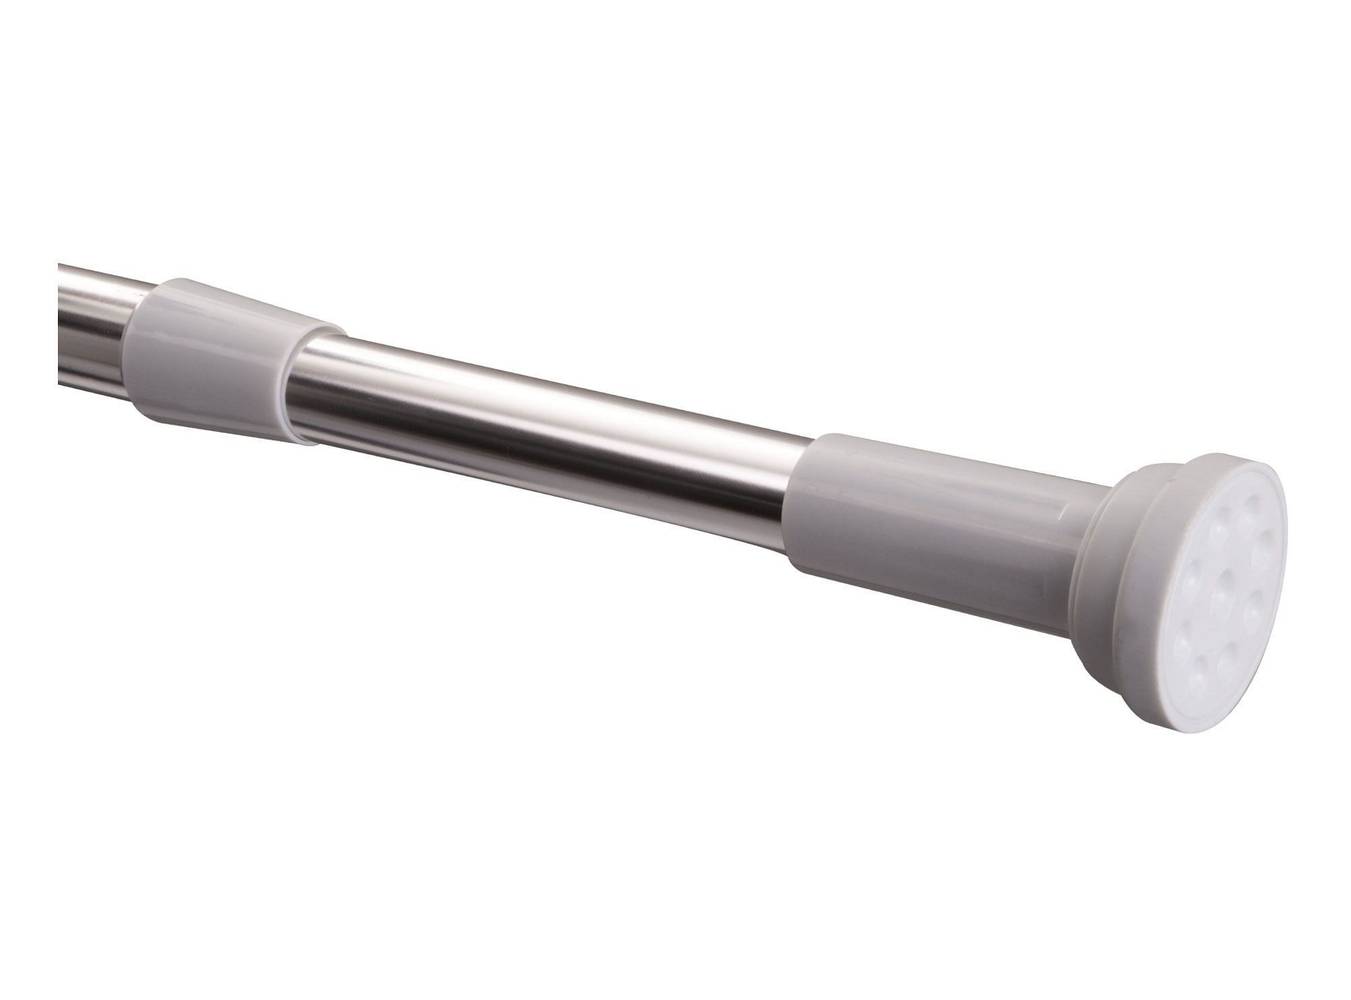 Metalhsa barra extensible 140-260 cm aluminio/blanco (1 barra extensible)